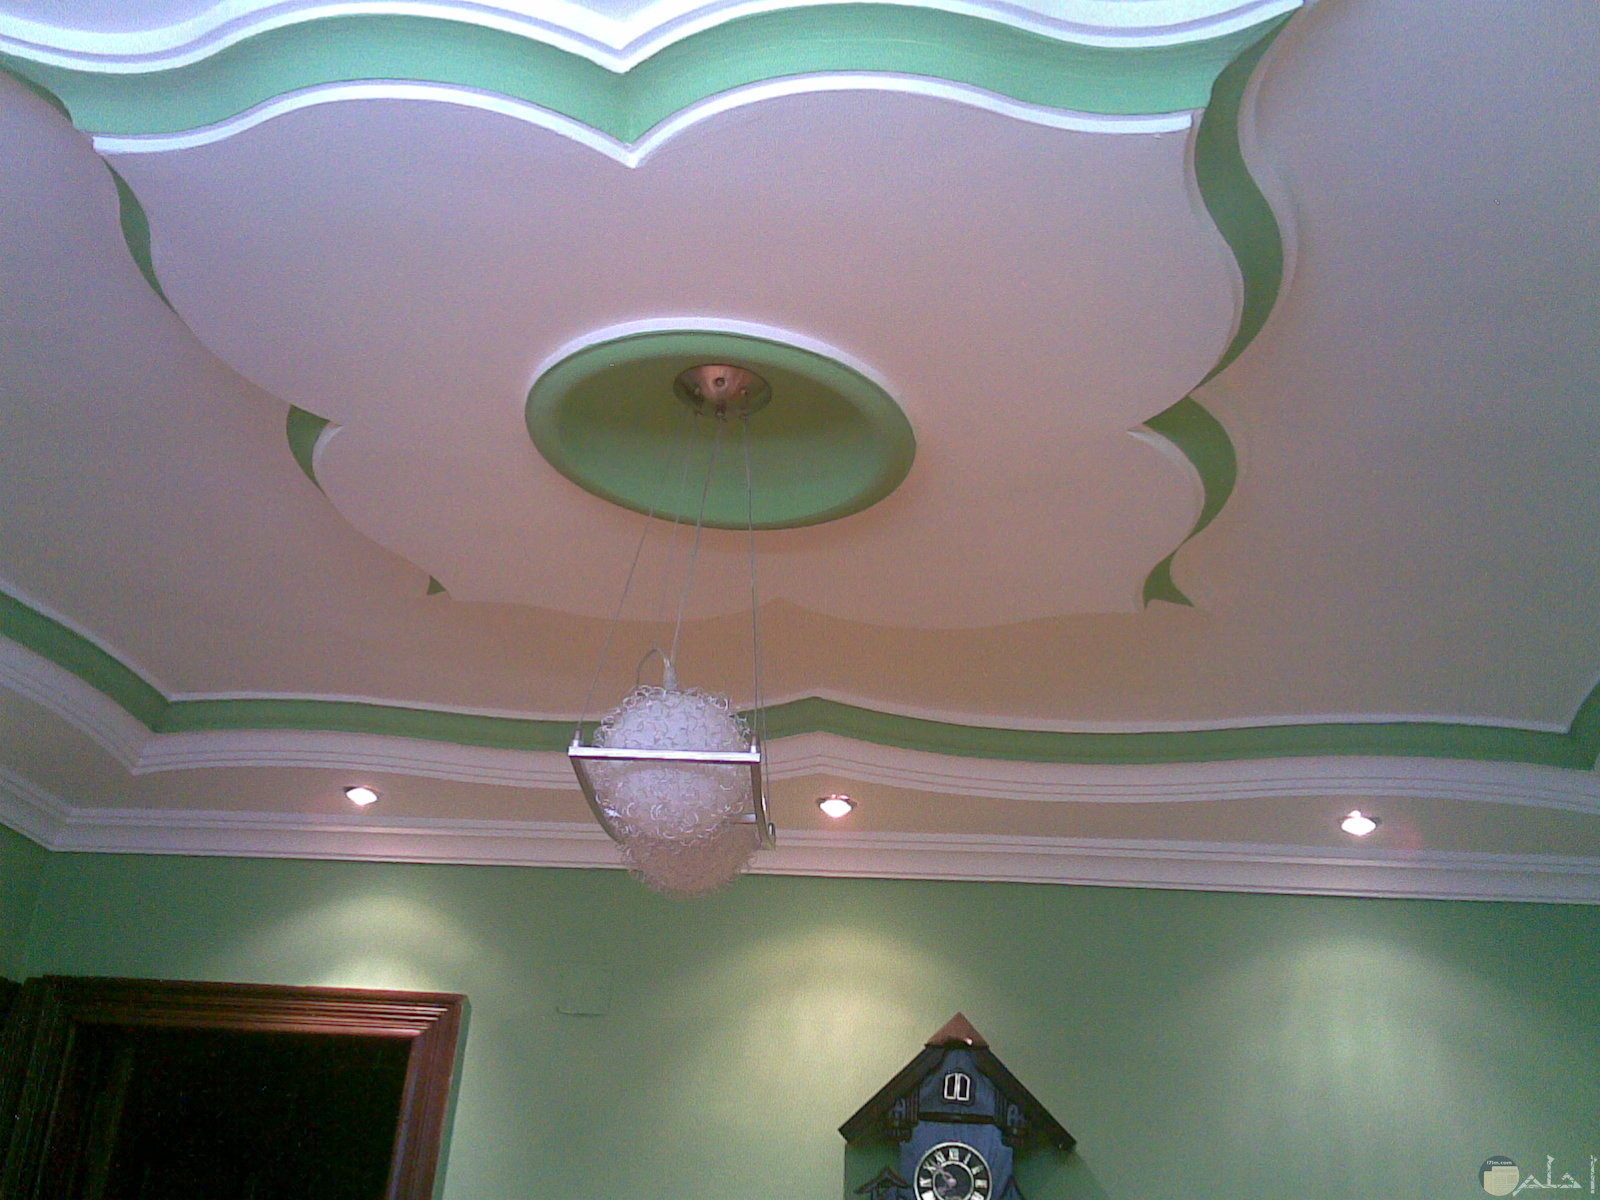 سقف من الاسمنت علي شكل ورده ابيض في اخضر وبالنصف نجفه بيضاء